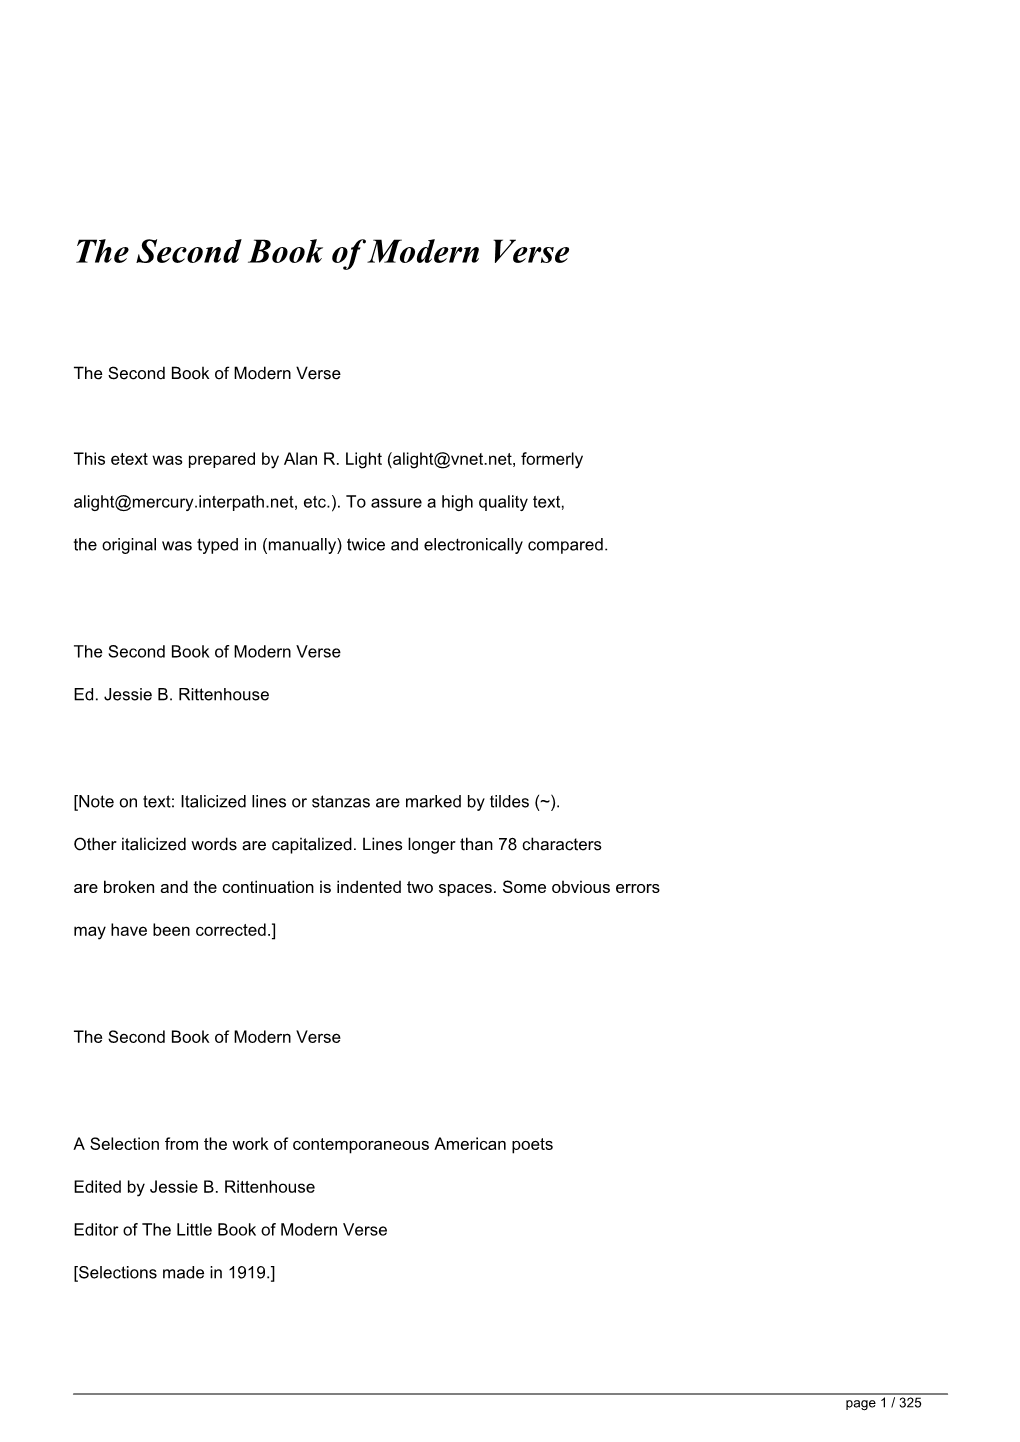 The Second Book of Modern Verse&lt;/H1&gt;